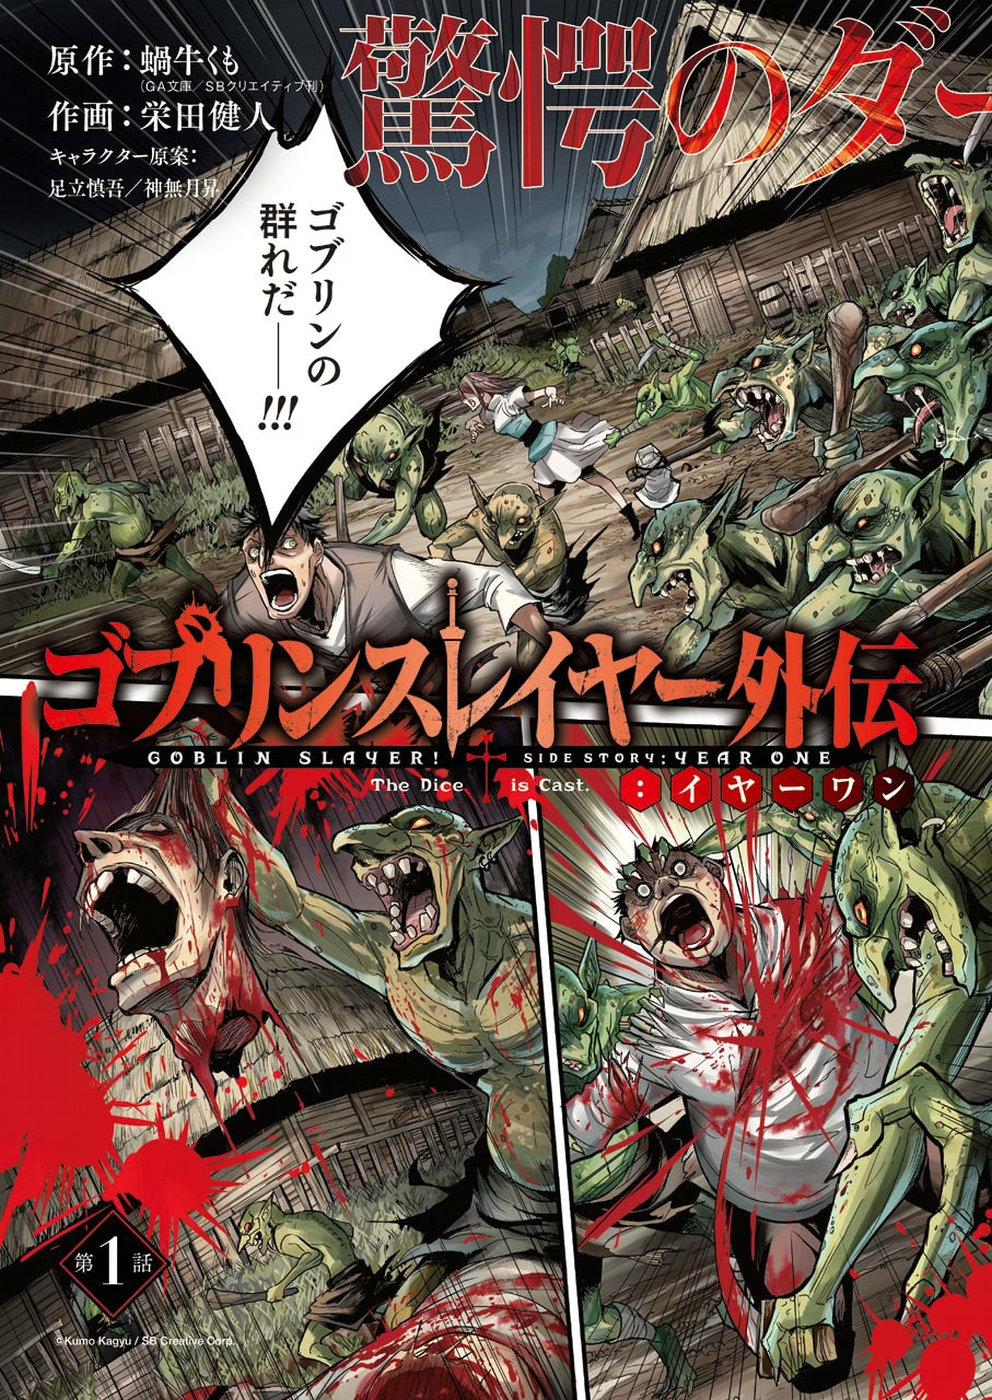 Year One Manga Chapter 1 Goblin Slayer Wiki Fandom